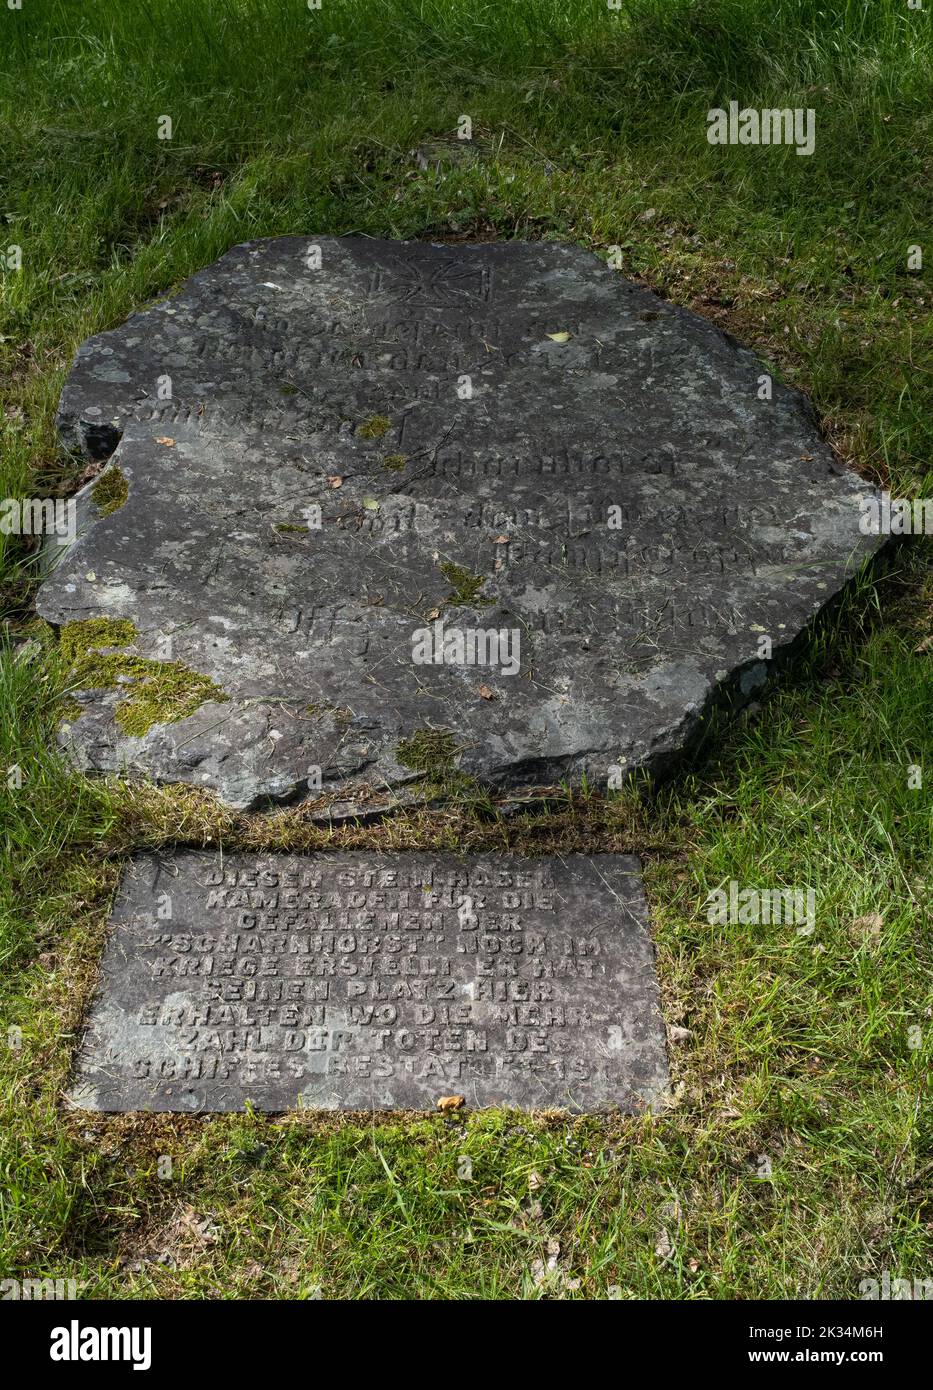 Soksenvika, Norvège - 11 juillet 2022 : cimetière militaire allemand et jugolavien à Soksenvika, Rognan. Deuxième Guerre mondiale. Jour ensoleillé d'été. Foc sélectif Banque D'Images